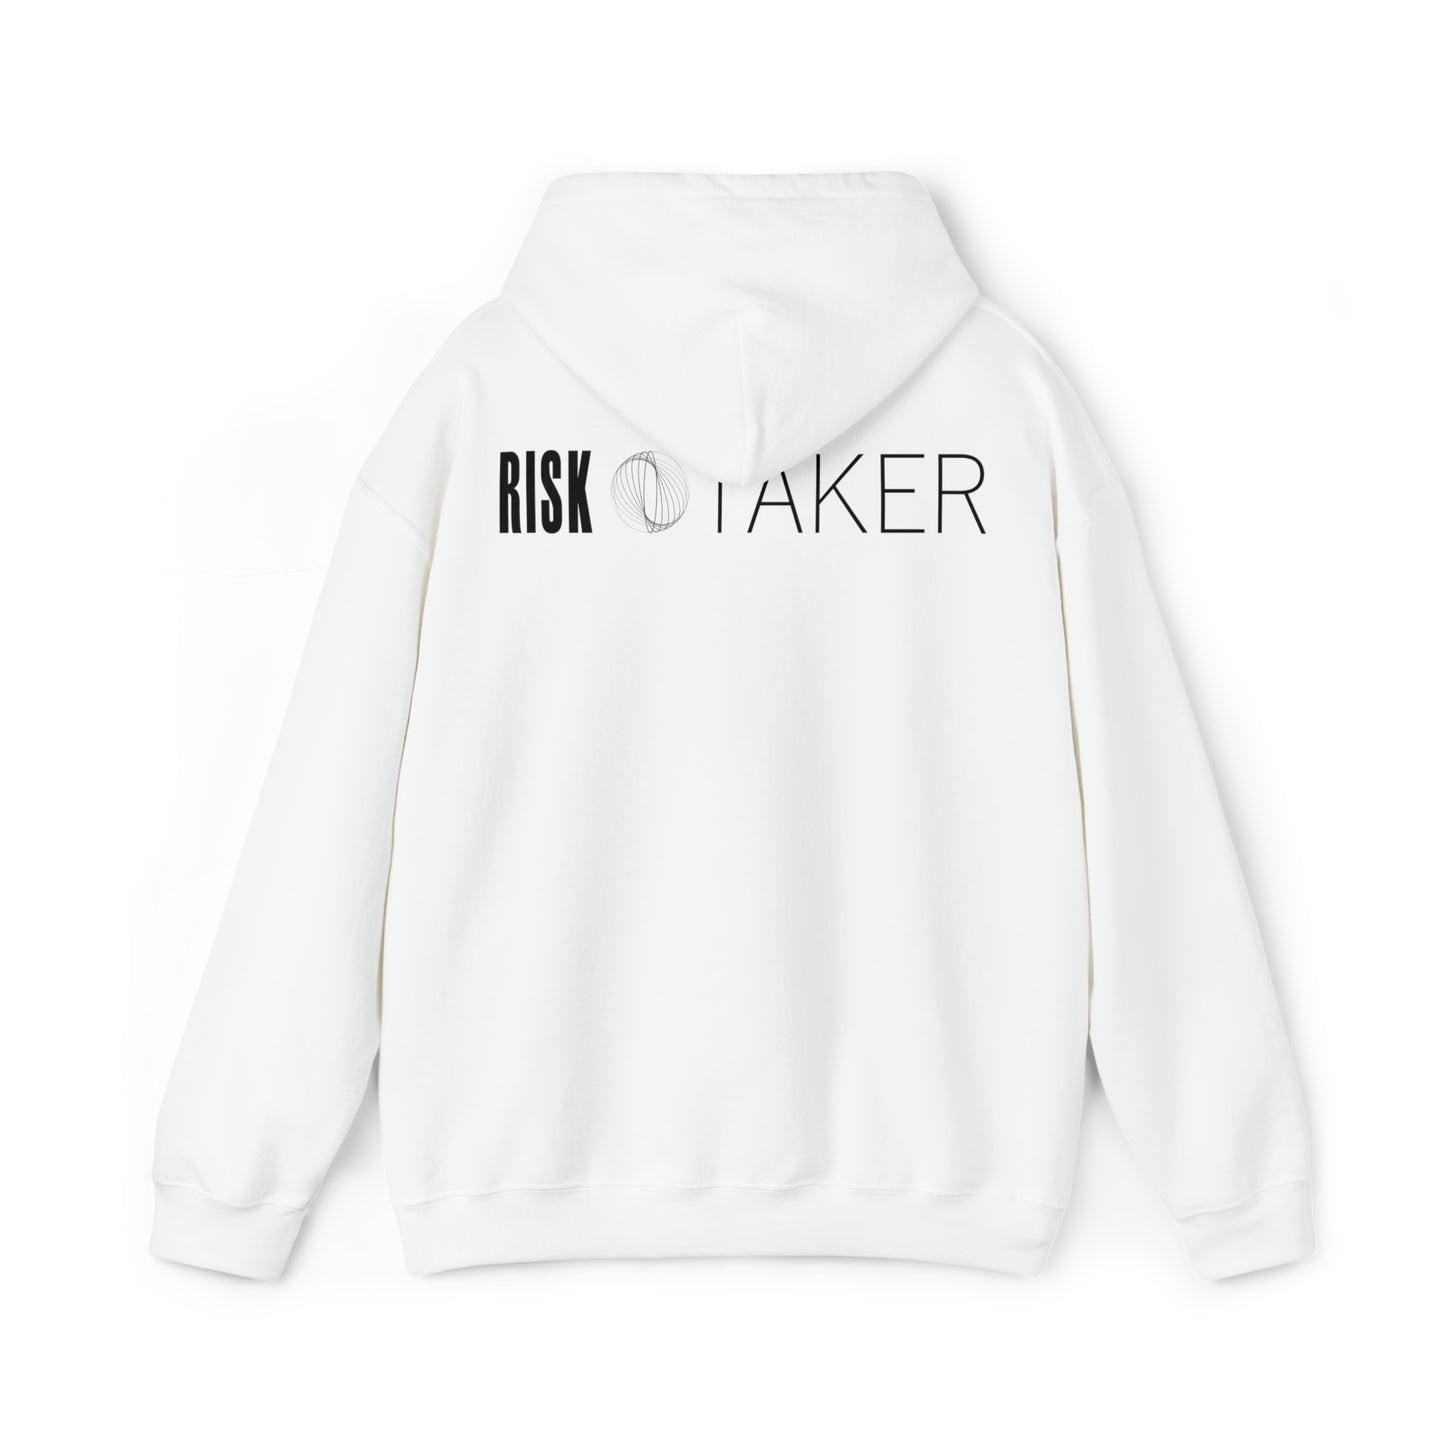 RISK TAKER Hooded Sweatshirt